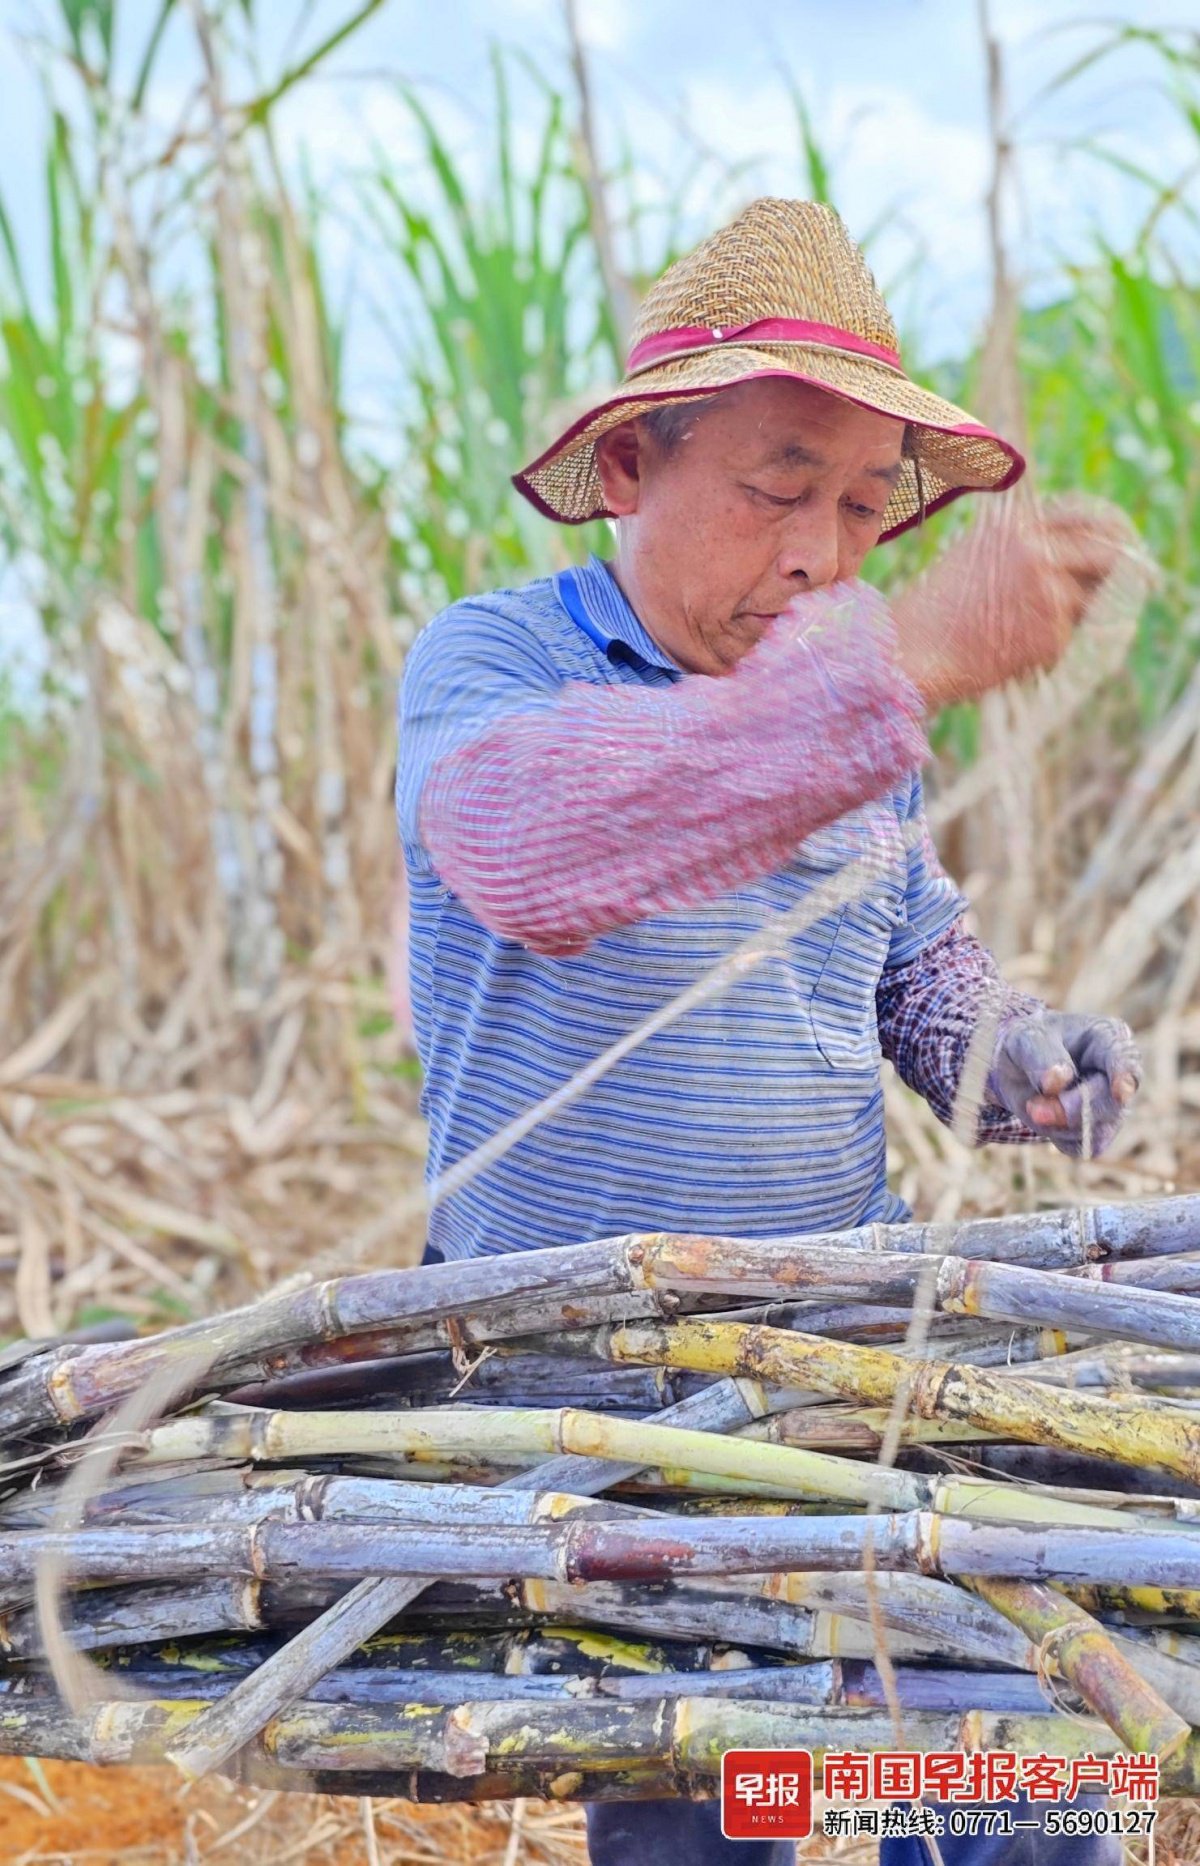 ▲砍蔗工将砍好的甘蔗熟练捆绑。